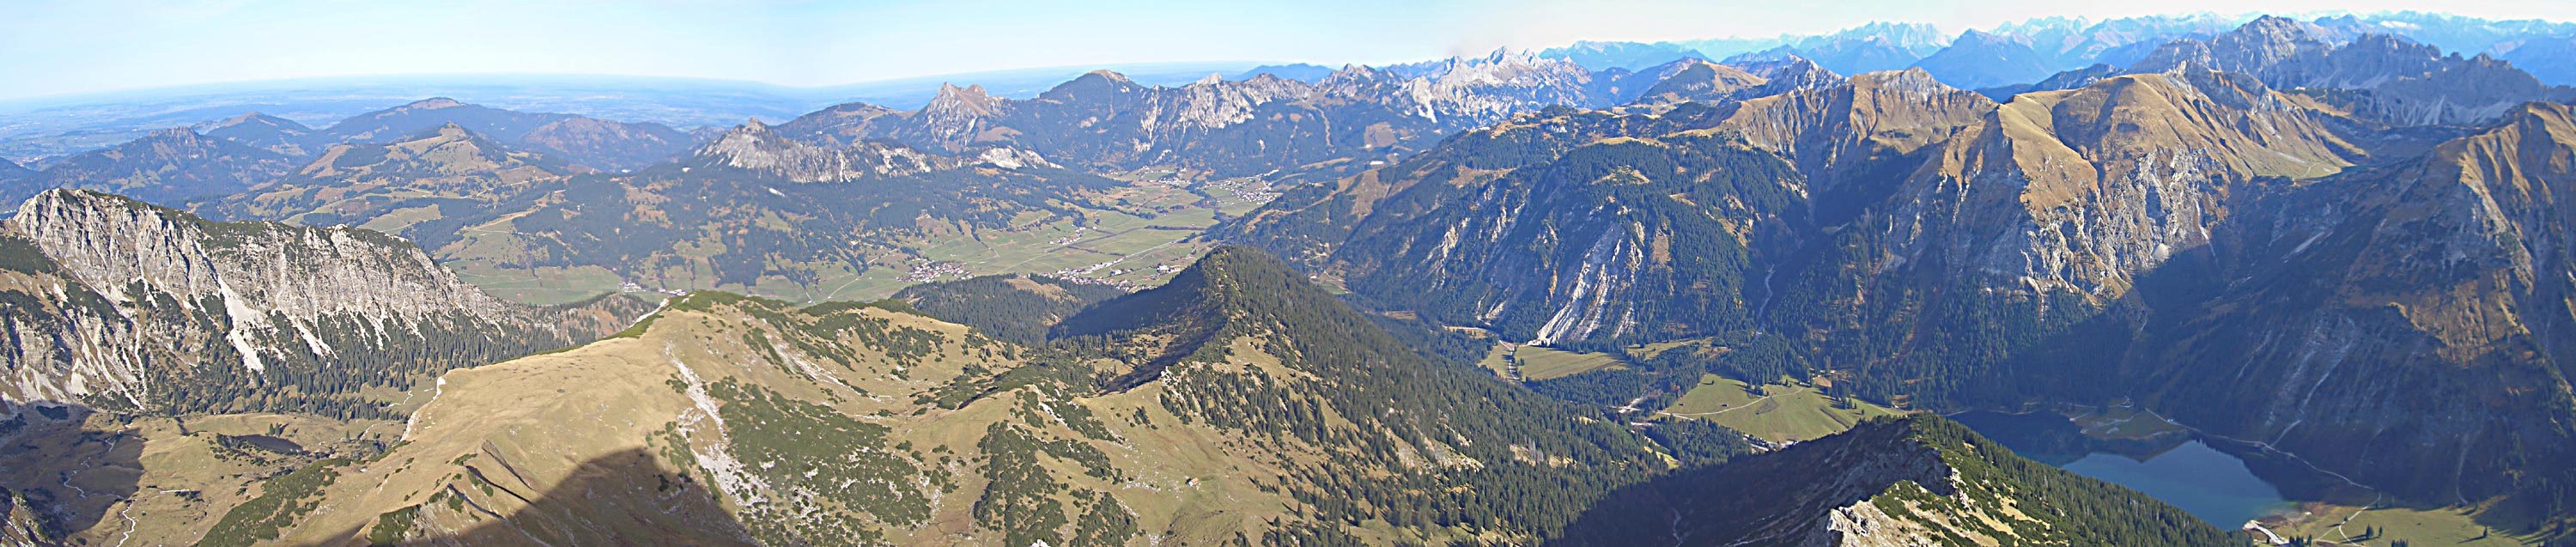 Panorama der Allgäuer Alpen vom Geißhorn